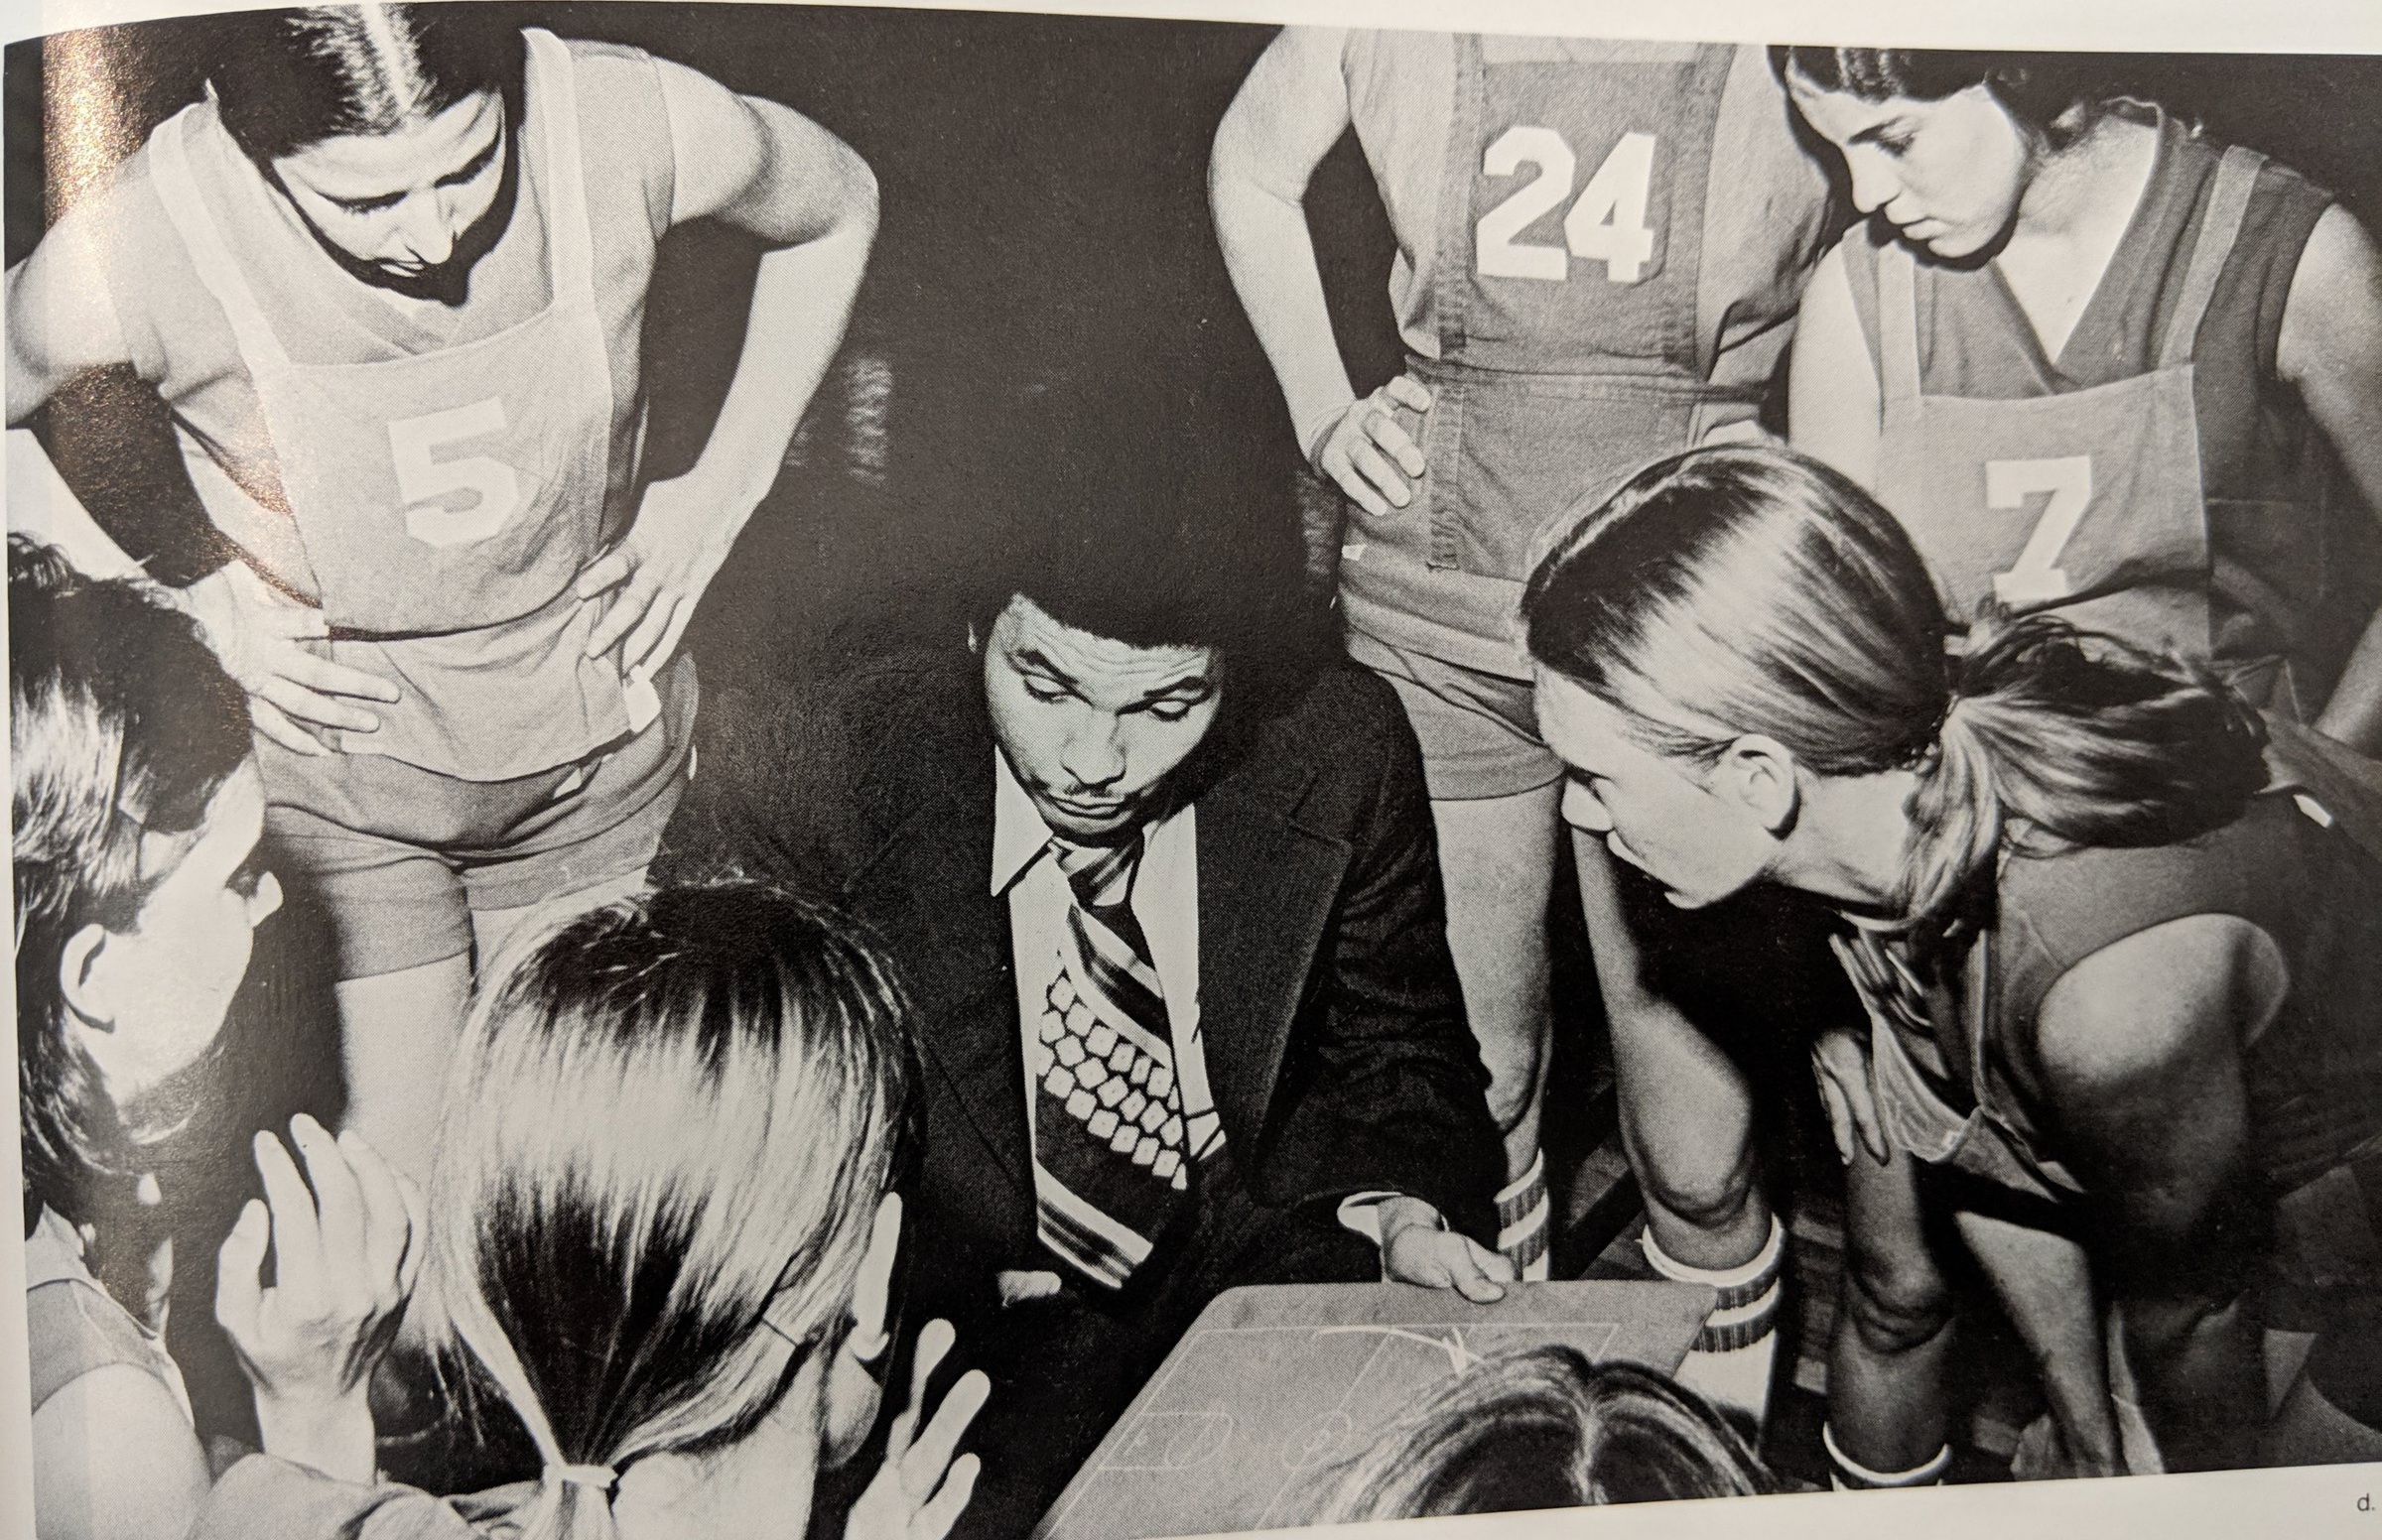 1973 basketball